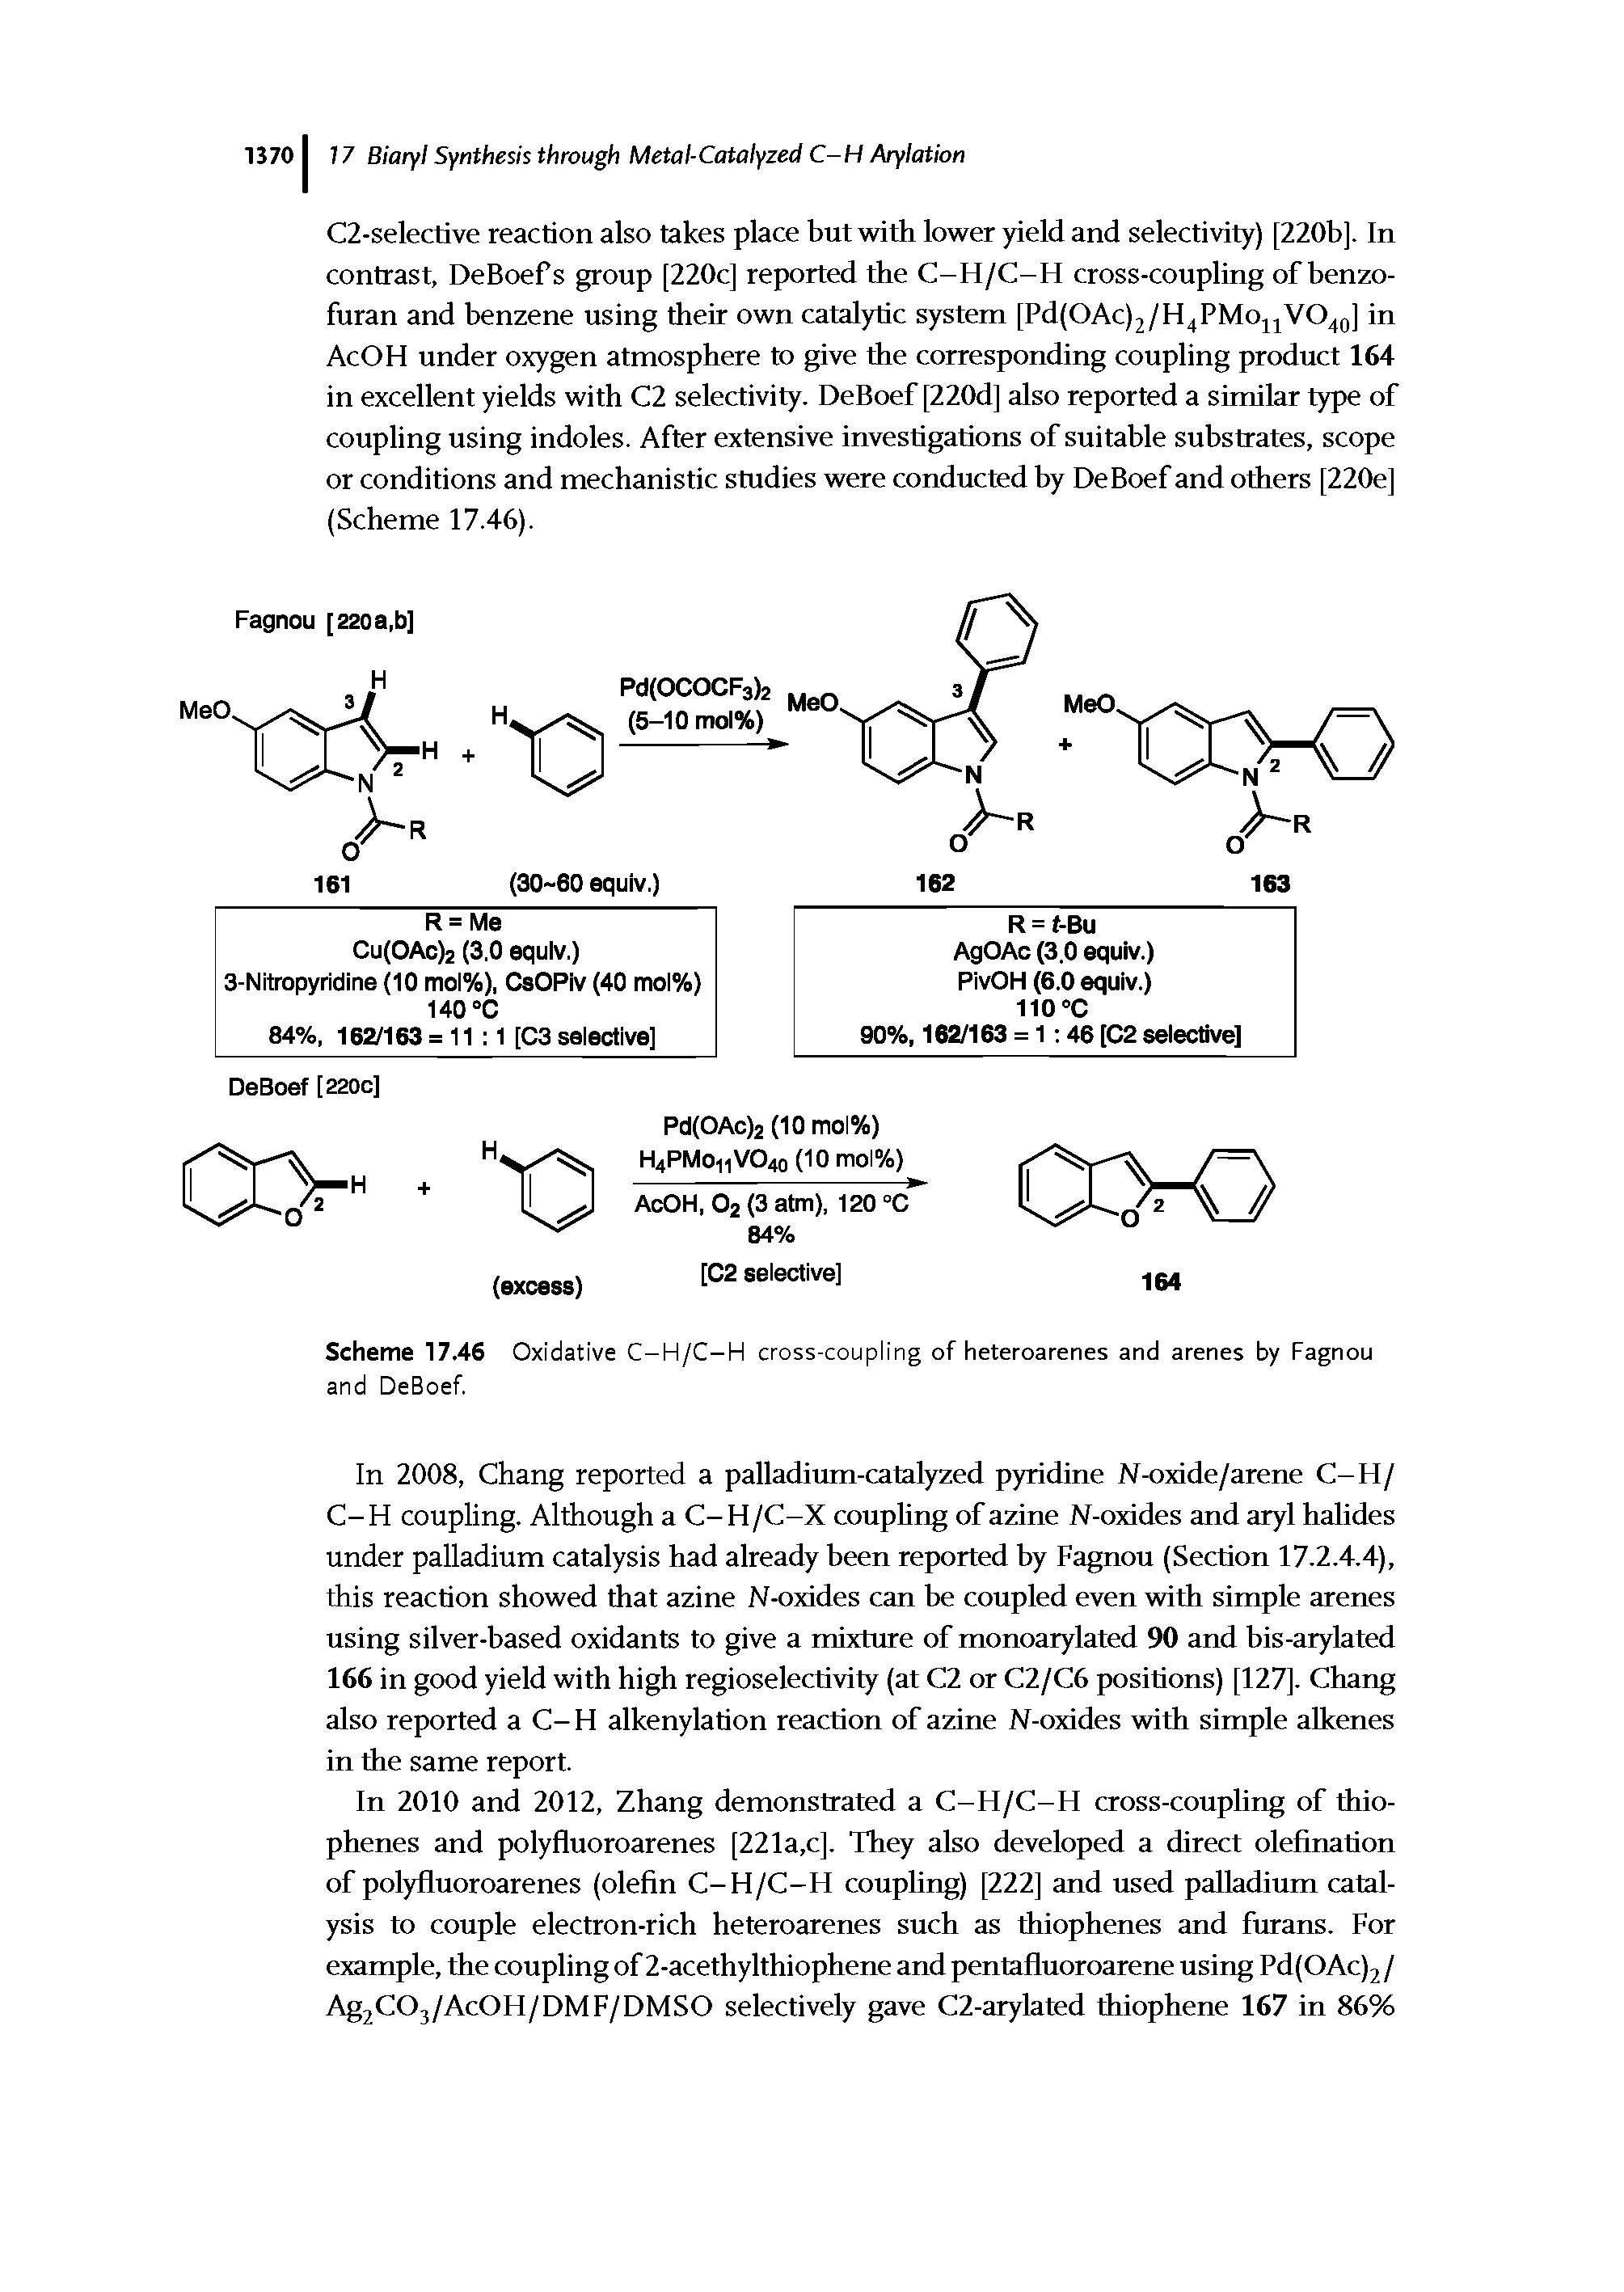 Scheme 17,46 Oxidative C-H/C-H cross-coupling of heteroarenes and arenes by Fagnou and DeBoef.